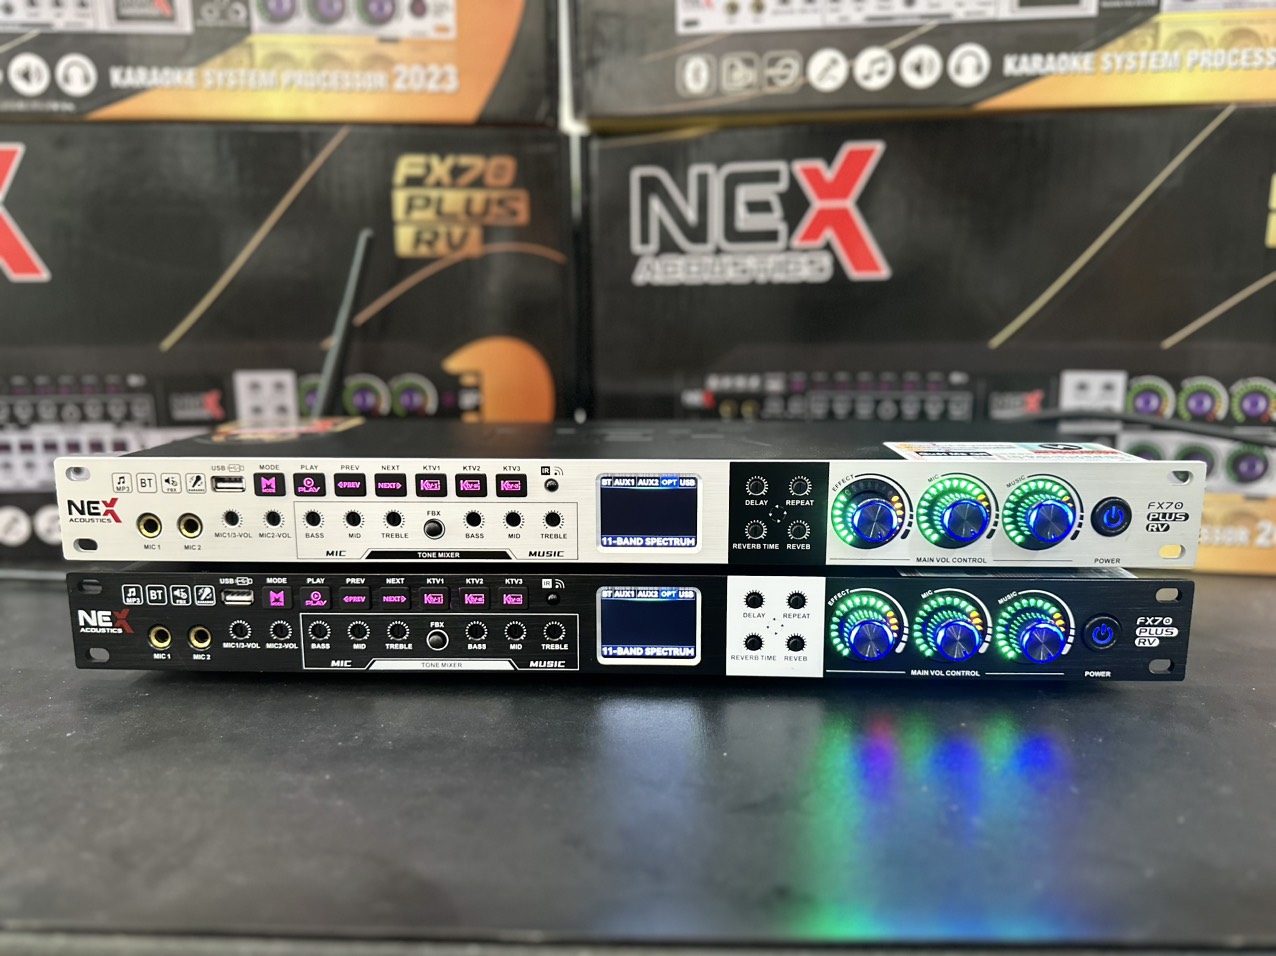 (Bán Lỗ Lấy Tương Tác)Vang cơ Nex FX70 Plus - Vang cơ thế hệ mới tích hợp 3 chế độ KTV karaoke chuyên nghiệp - Hàng Chính Hãng